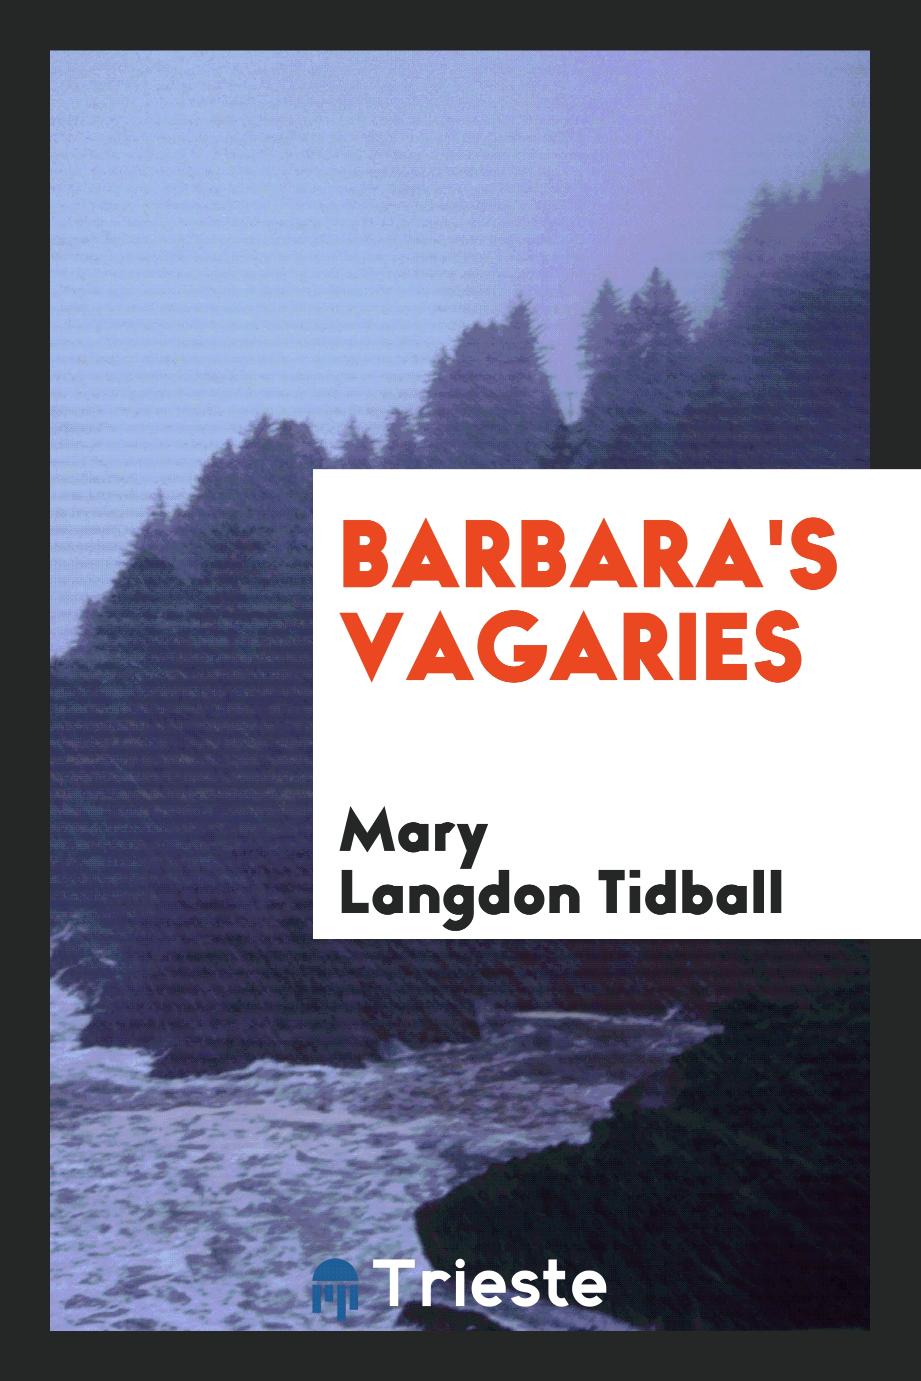 Barbara's Vagaries